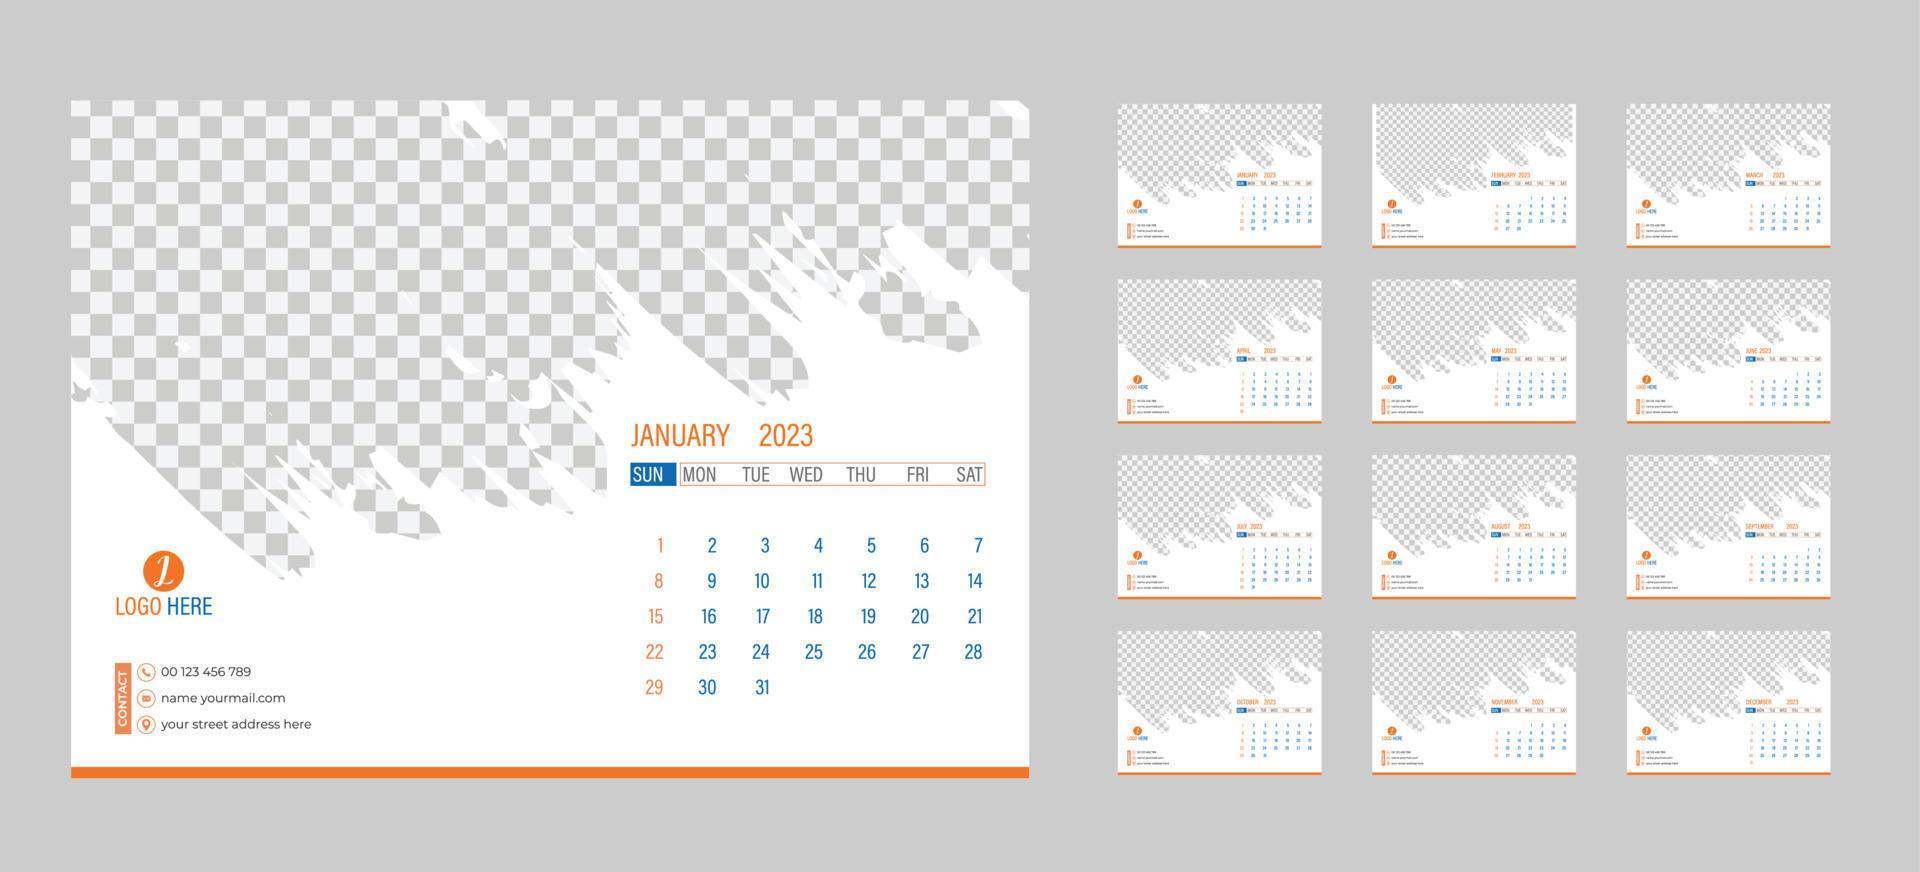 calendrier photo mensuel de bureau 2023. mise en page simple du calendrier photo horizontal mensuel pour l'année 2023 en anglais. calendrier de couverture et modèles de 12 mois. la semaine commence à partir du lundi. illustration vectorielle vecteur